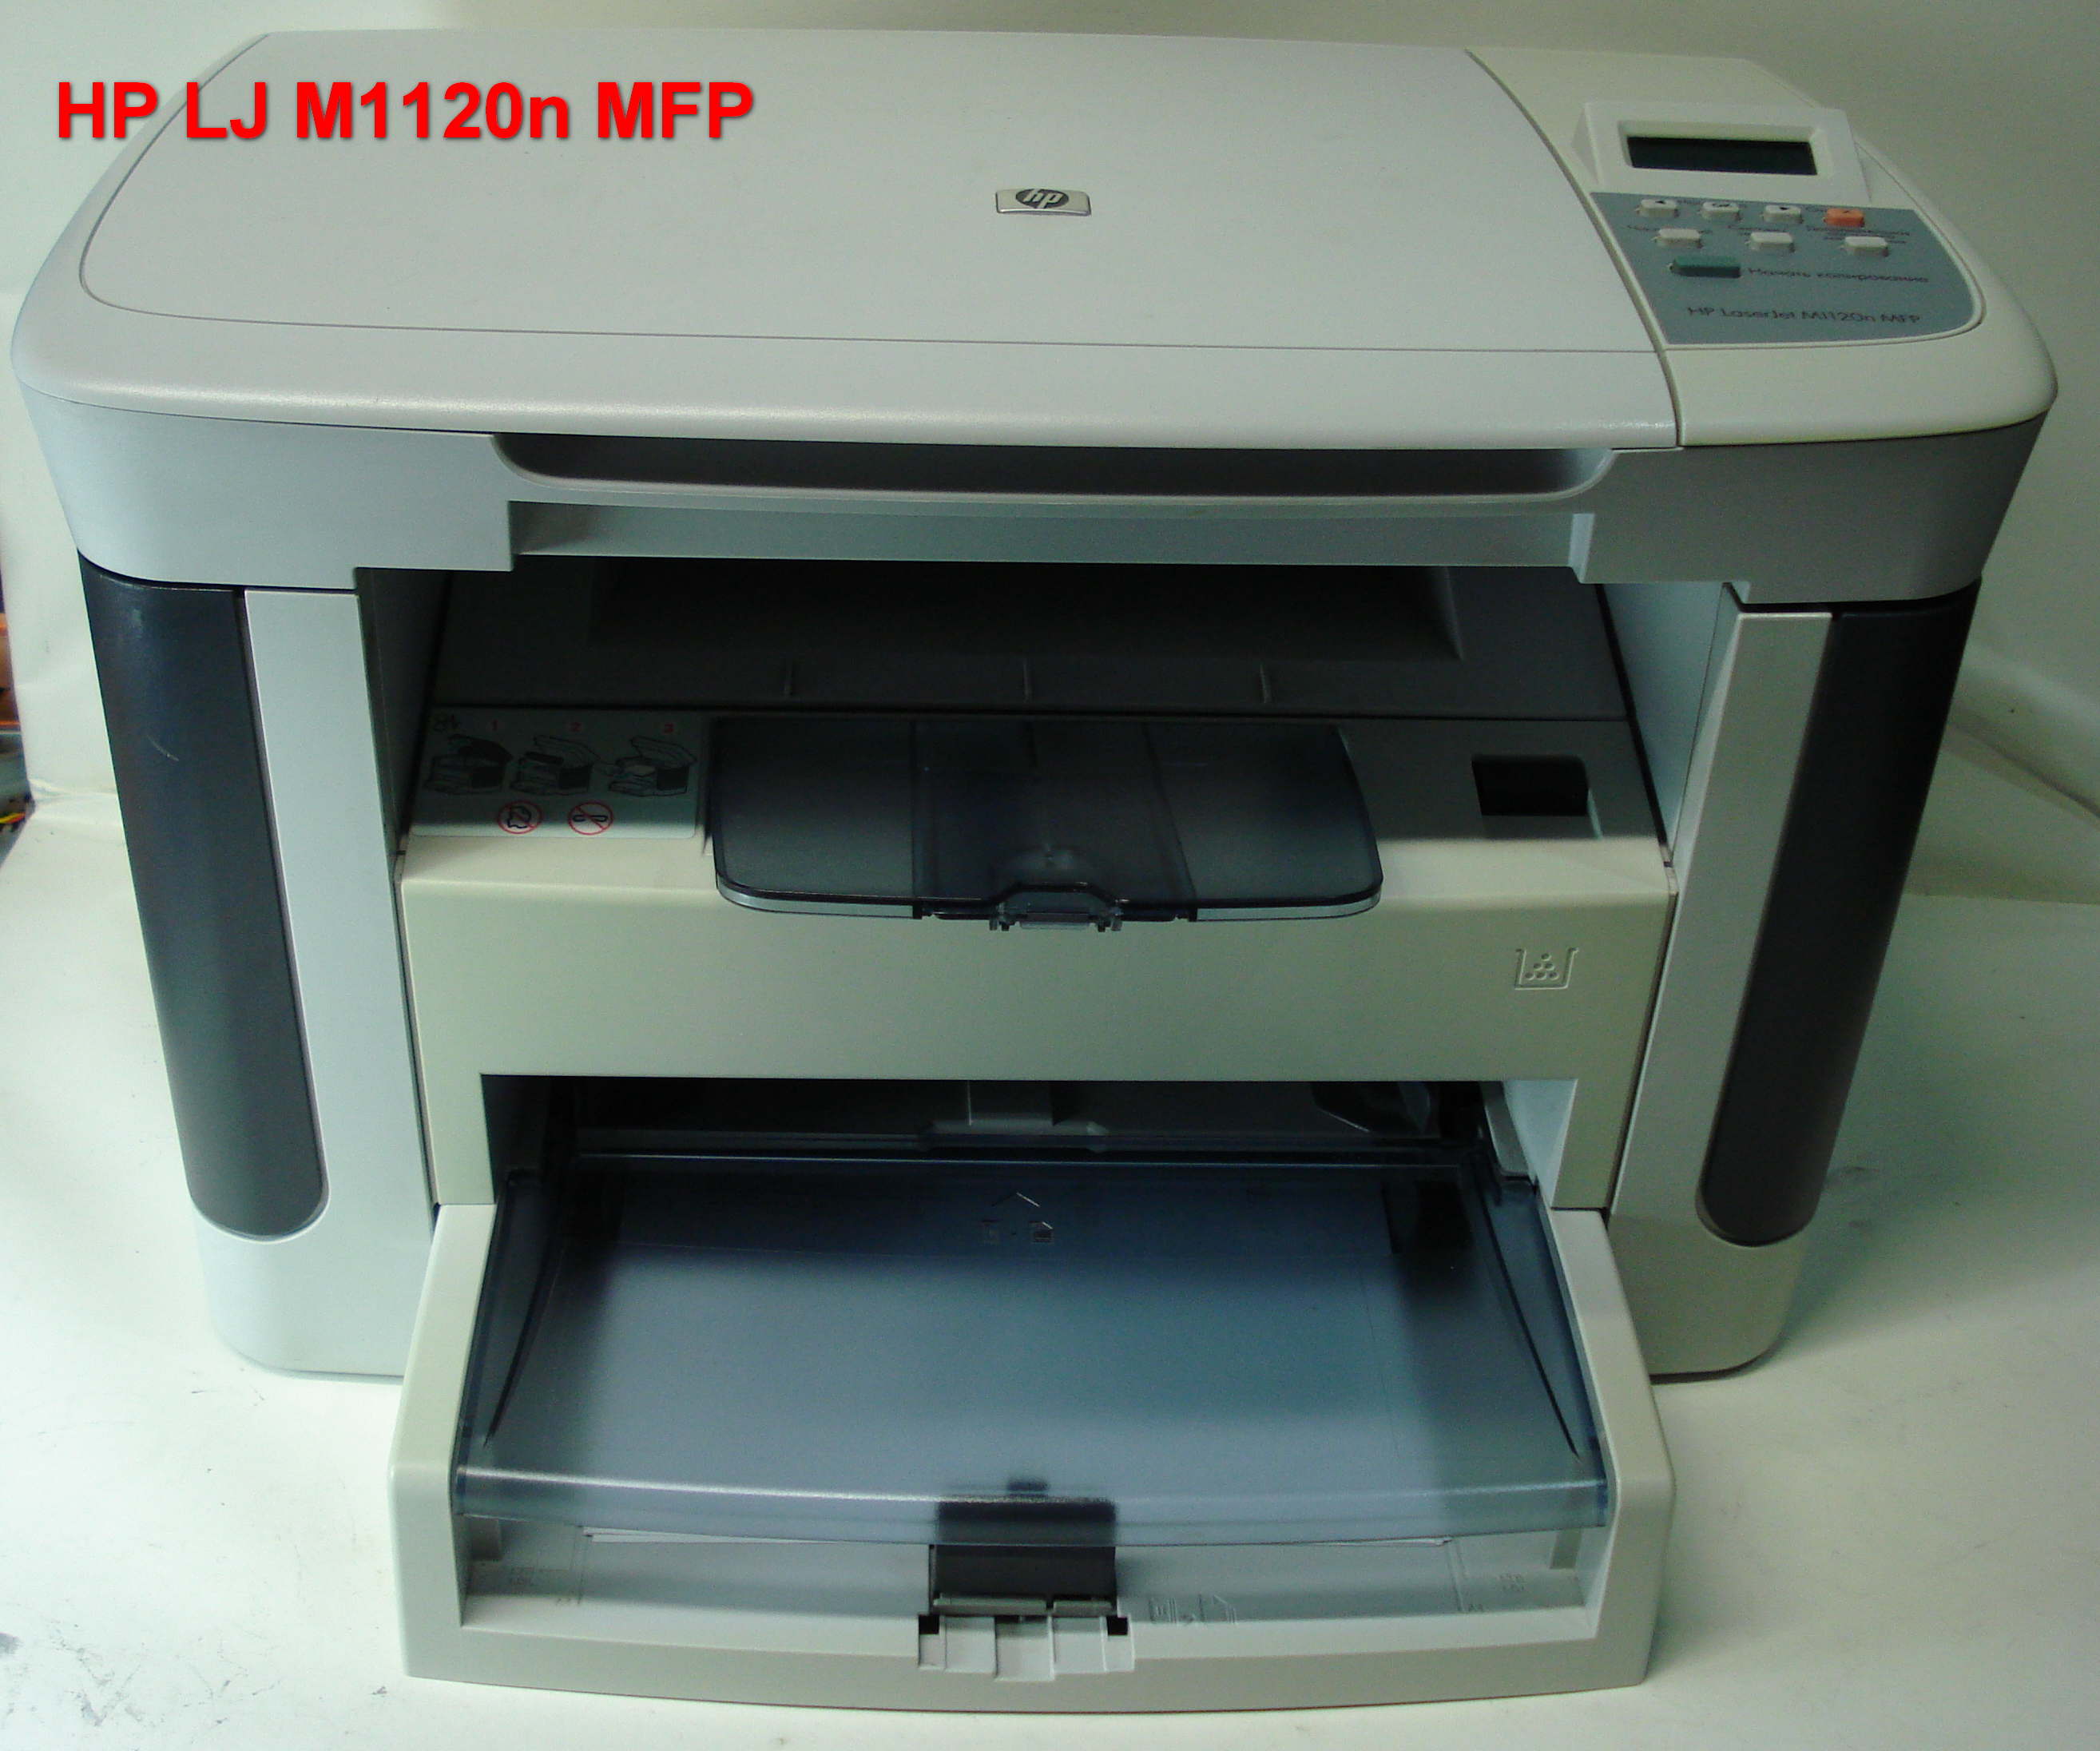 HP LaserJet M 1120 n MFP